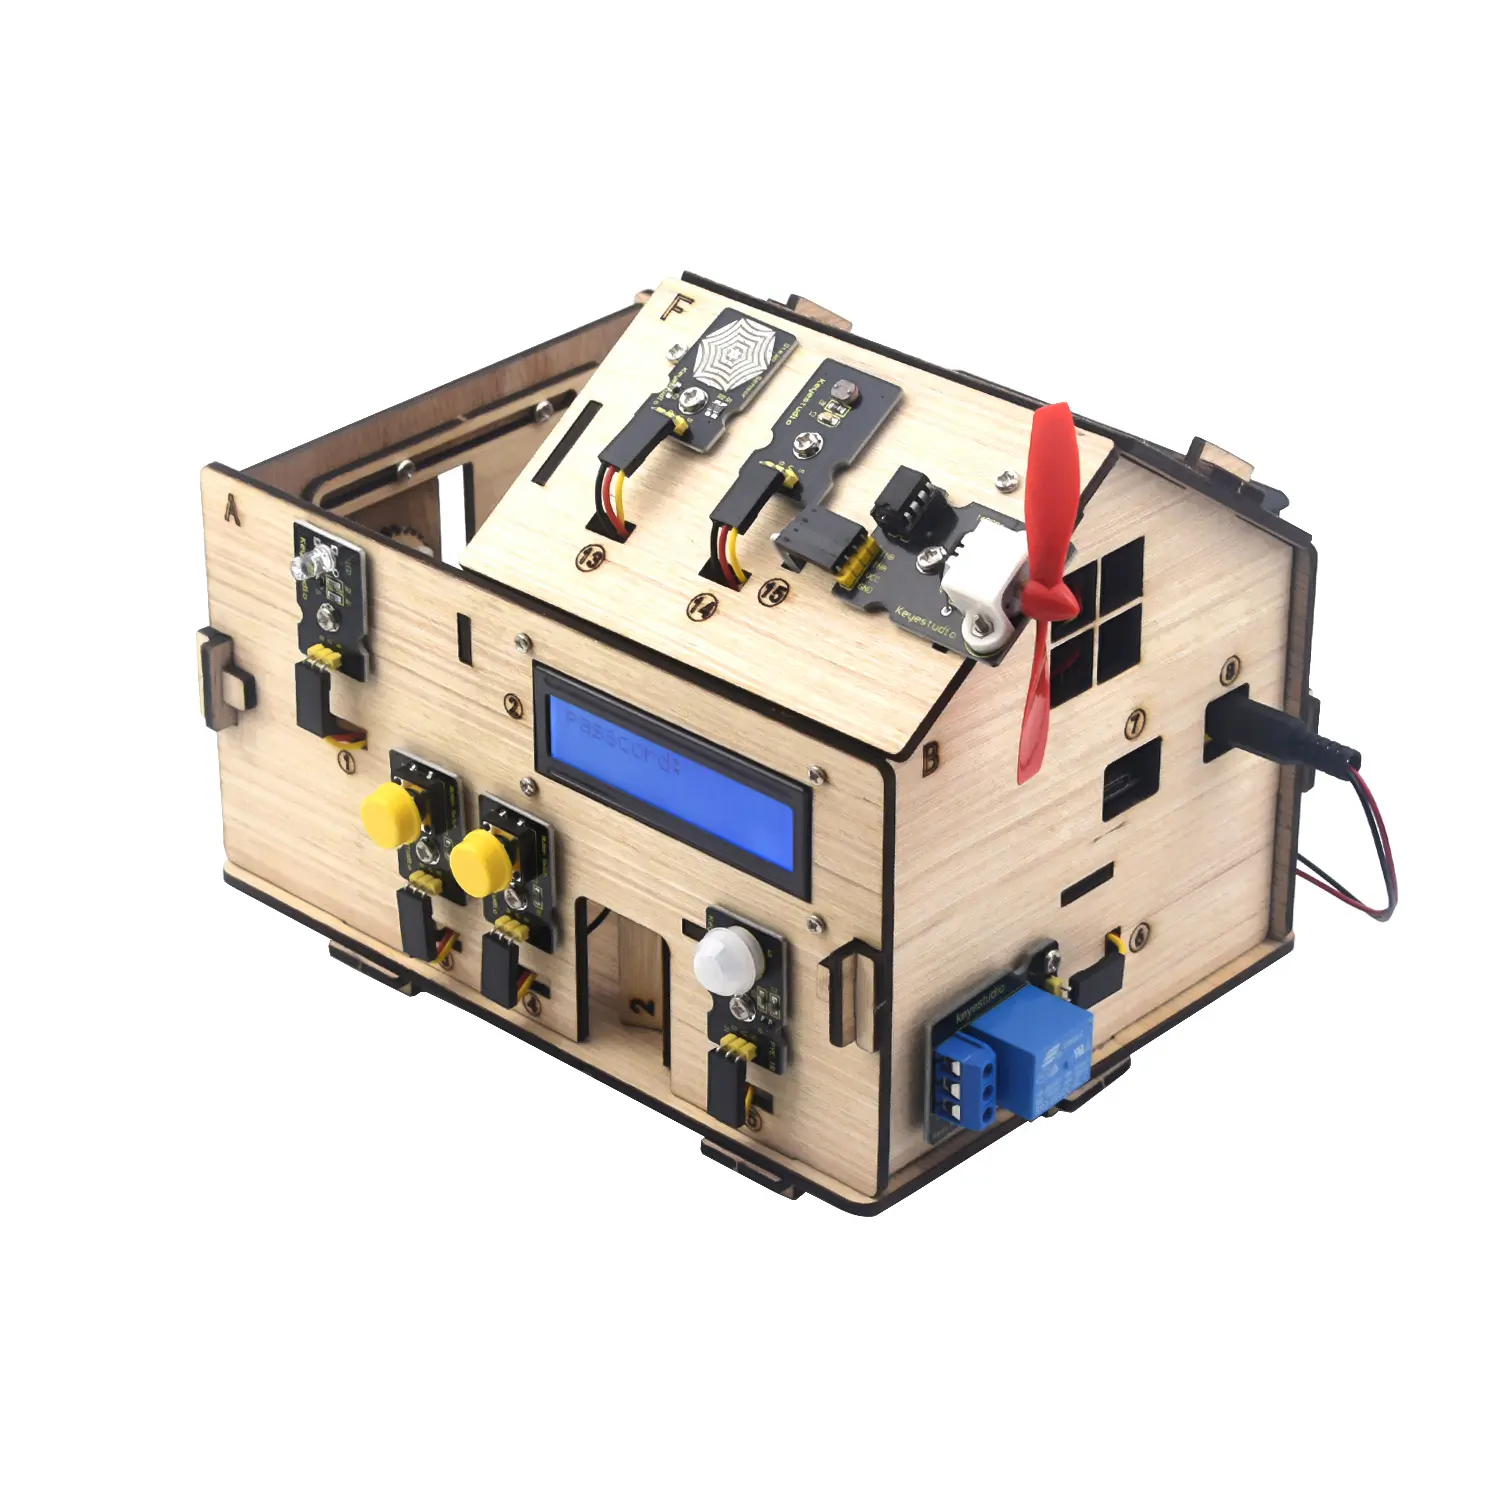 Kit de iniciación de aprendizaje electrónico, casa de madera educativa, bricolaje, para Arduino Uno, gran oferta